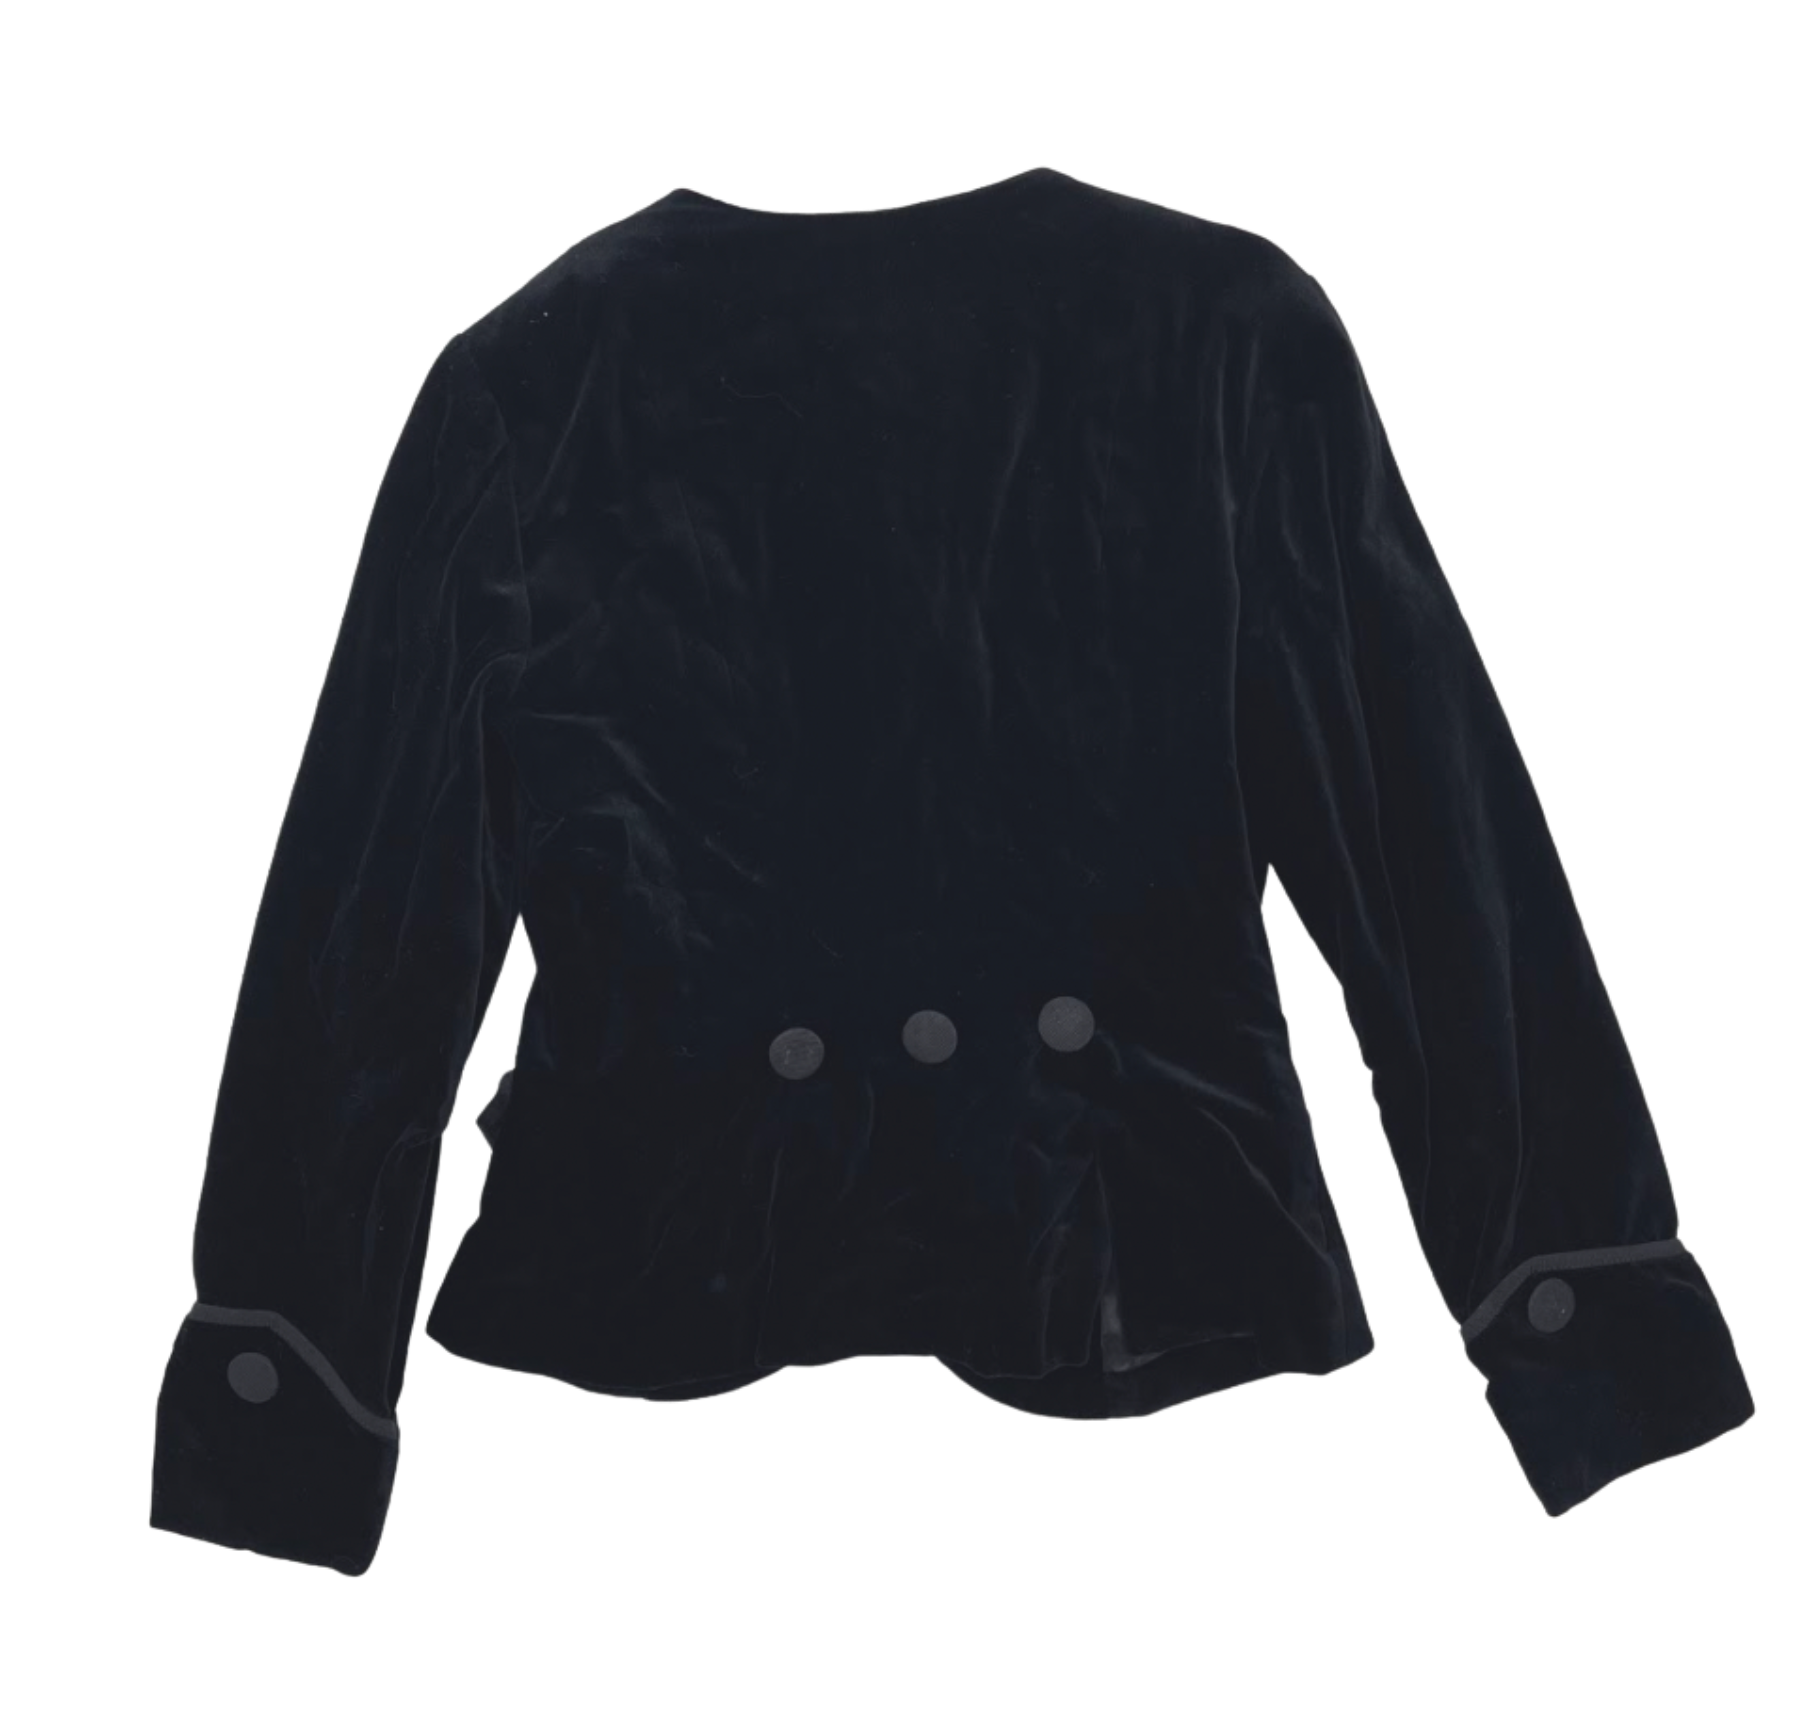 BONPOINT - Black velvet jacket - 12 years old